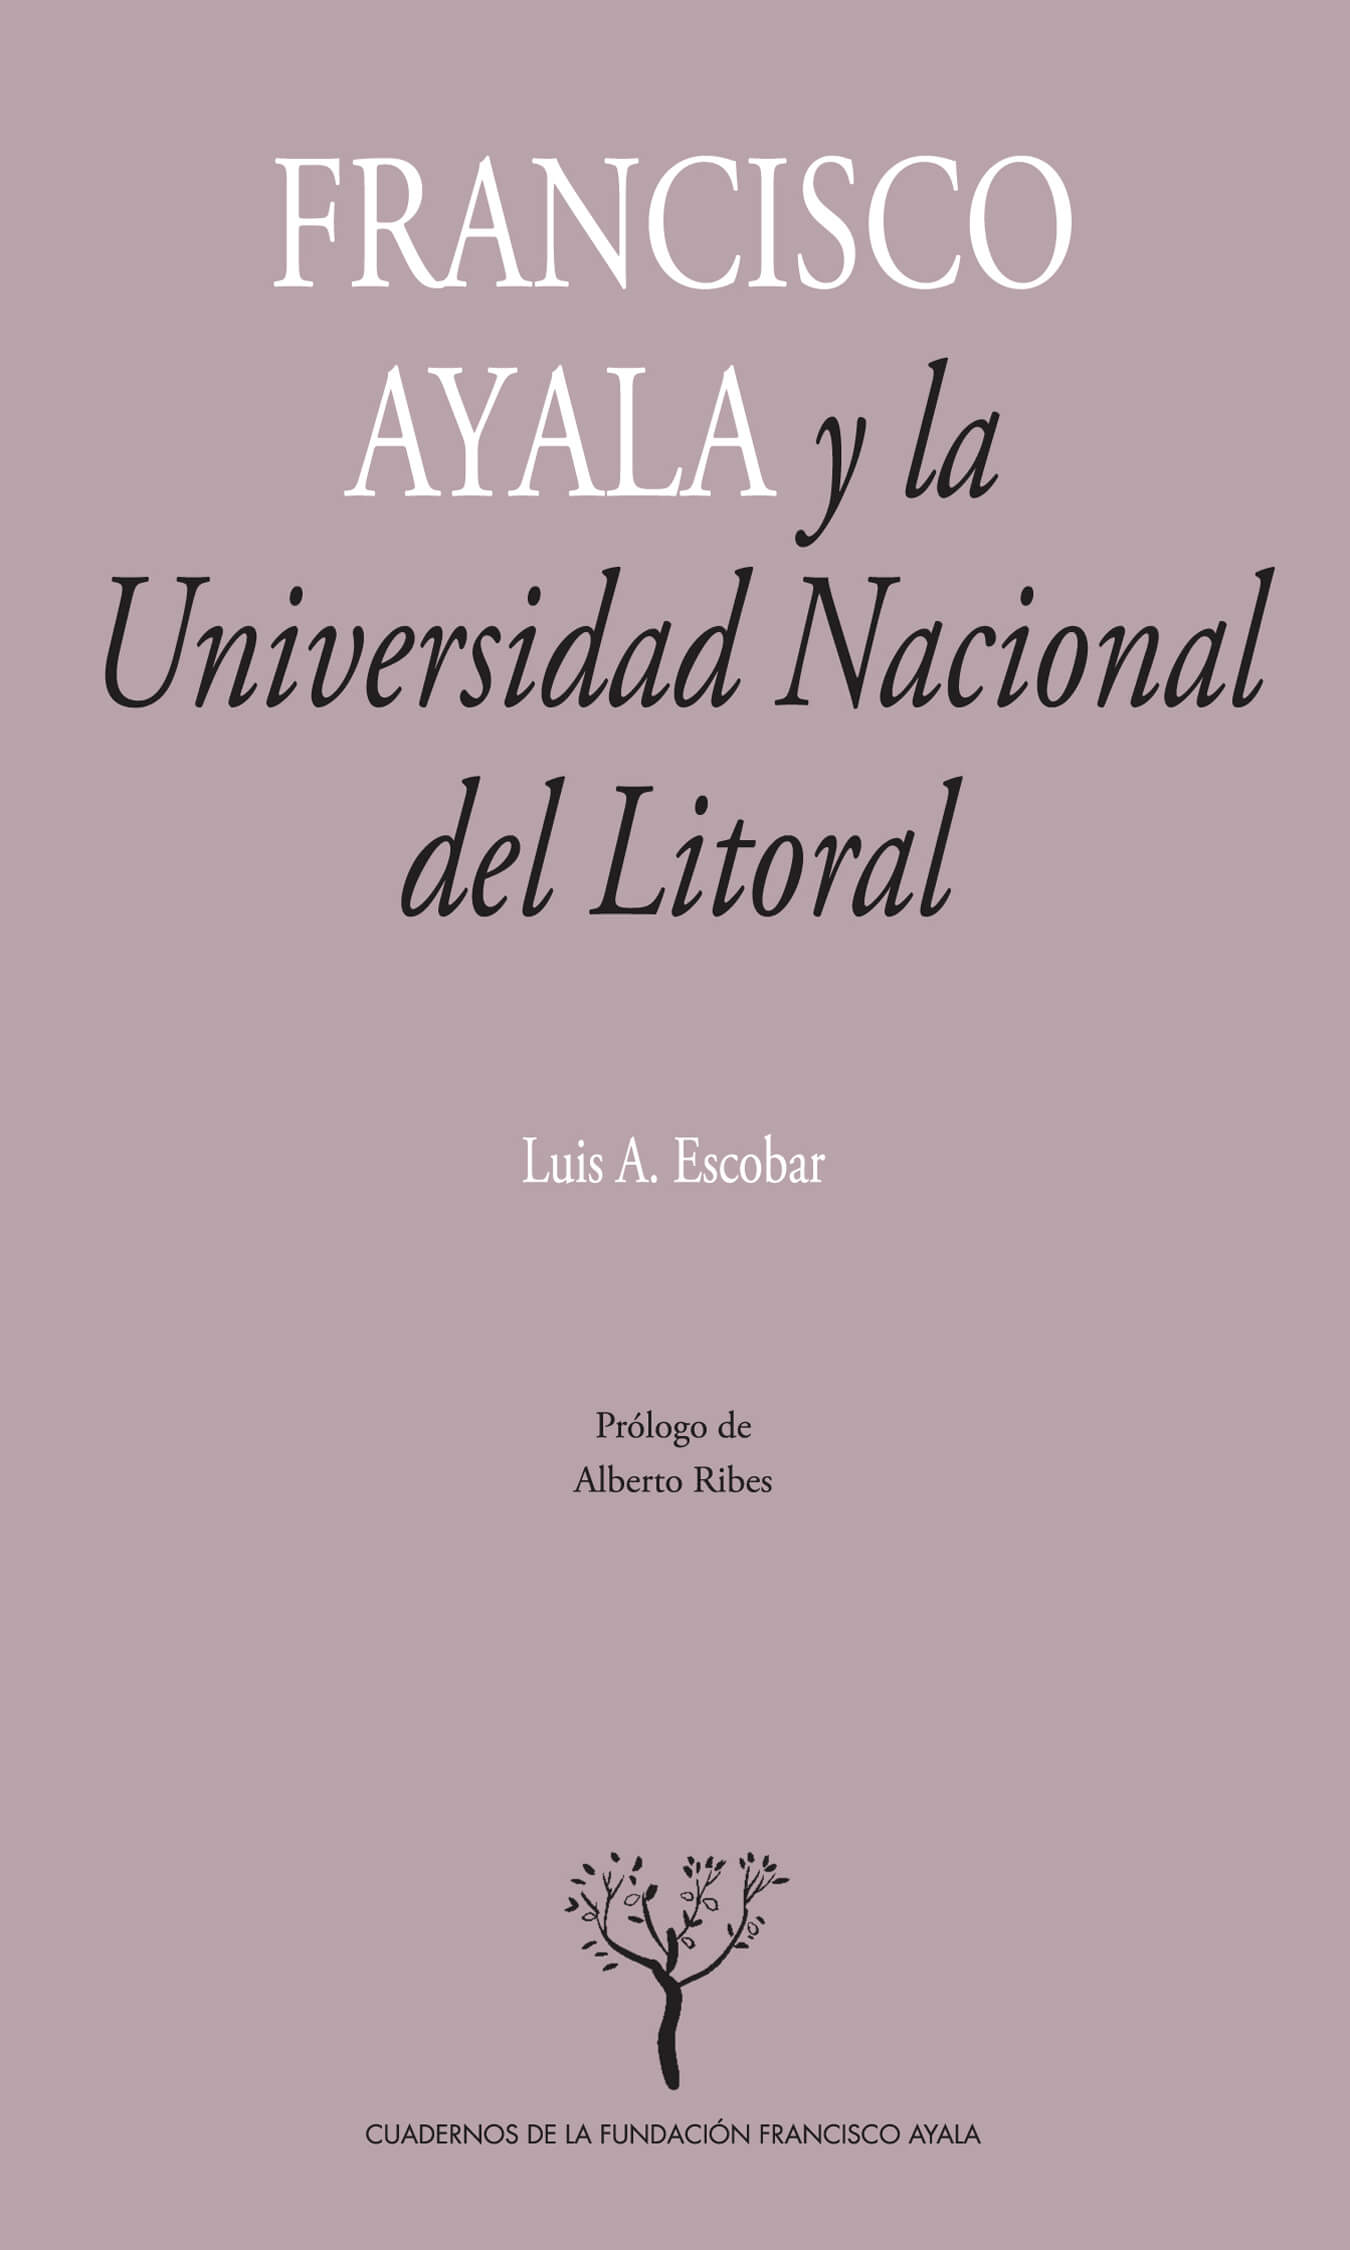 Francisco Ayala y la Universidad Nacional del Litoral